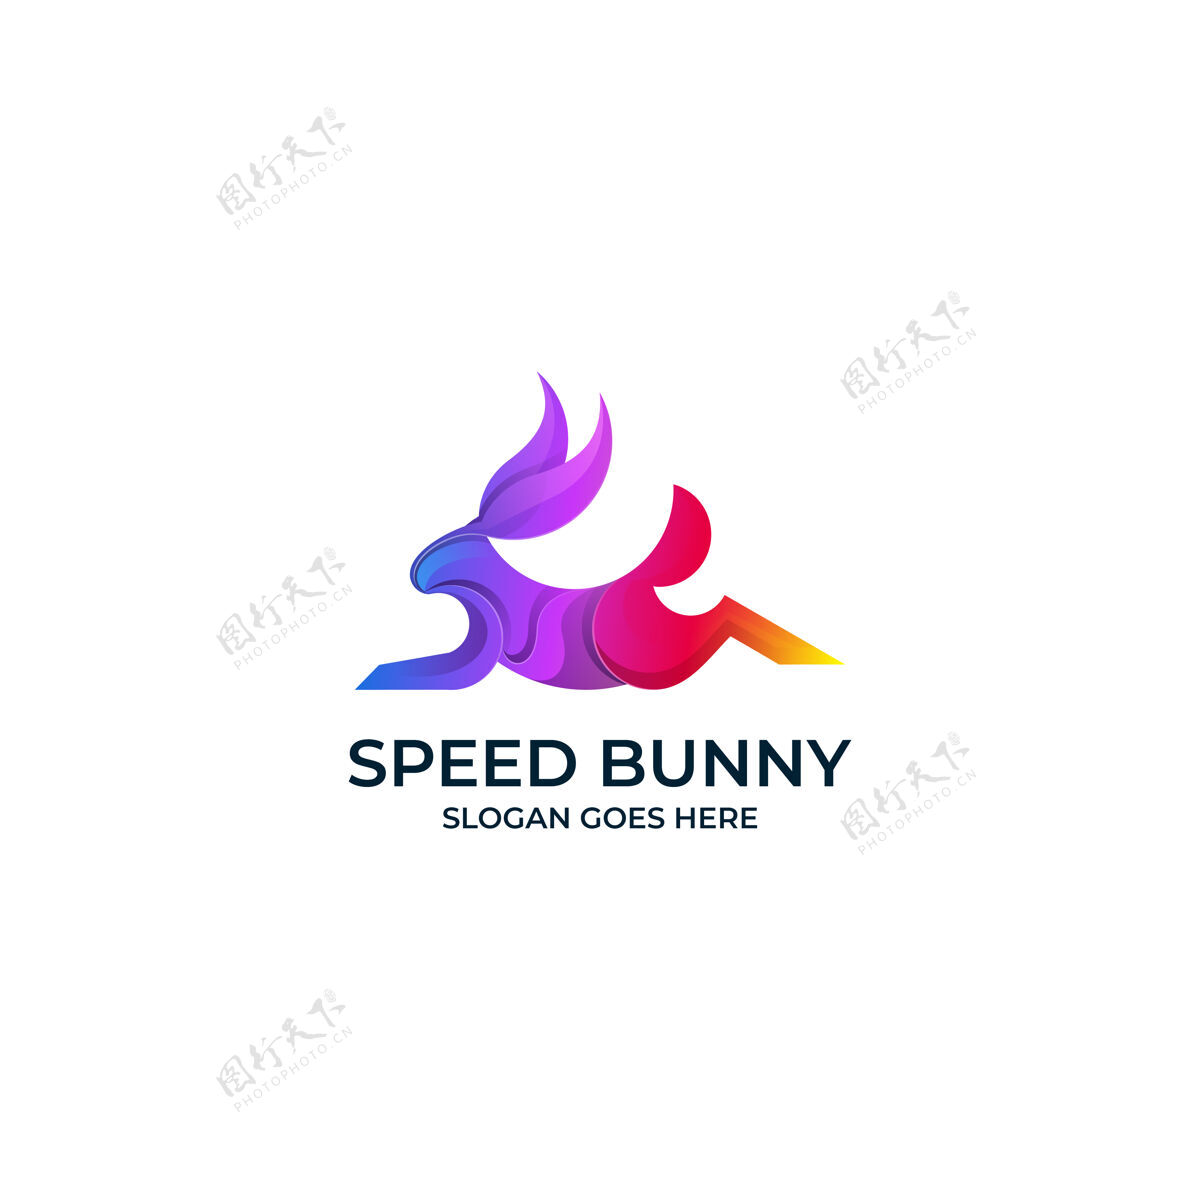 速度极速兔子渐变标志梯度哺乳动物兔子